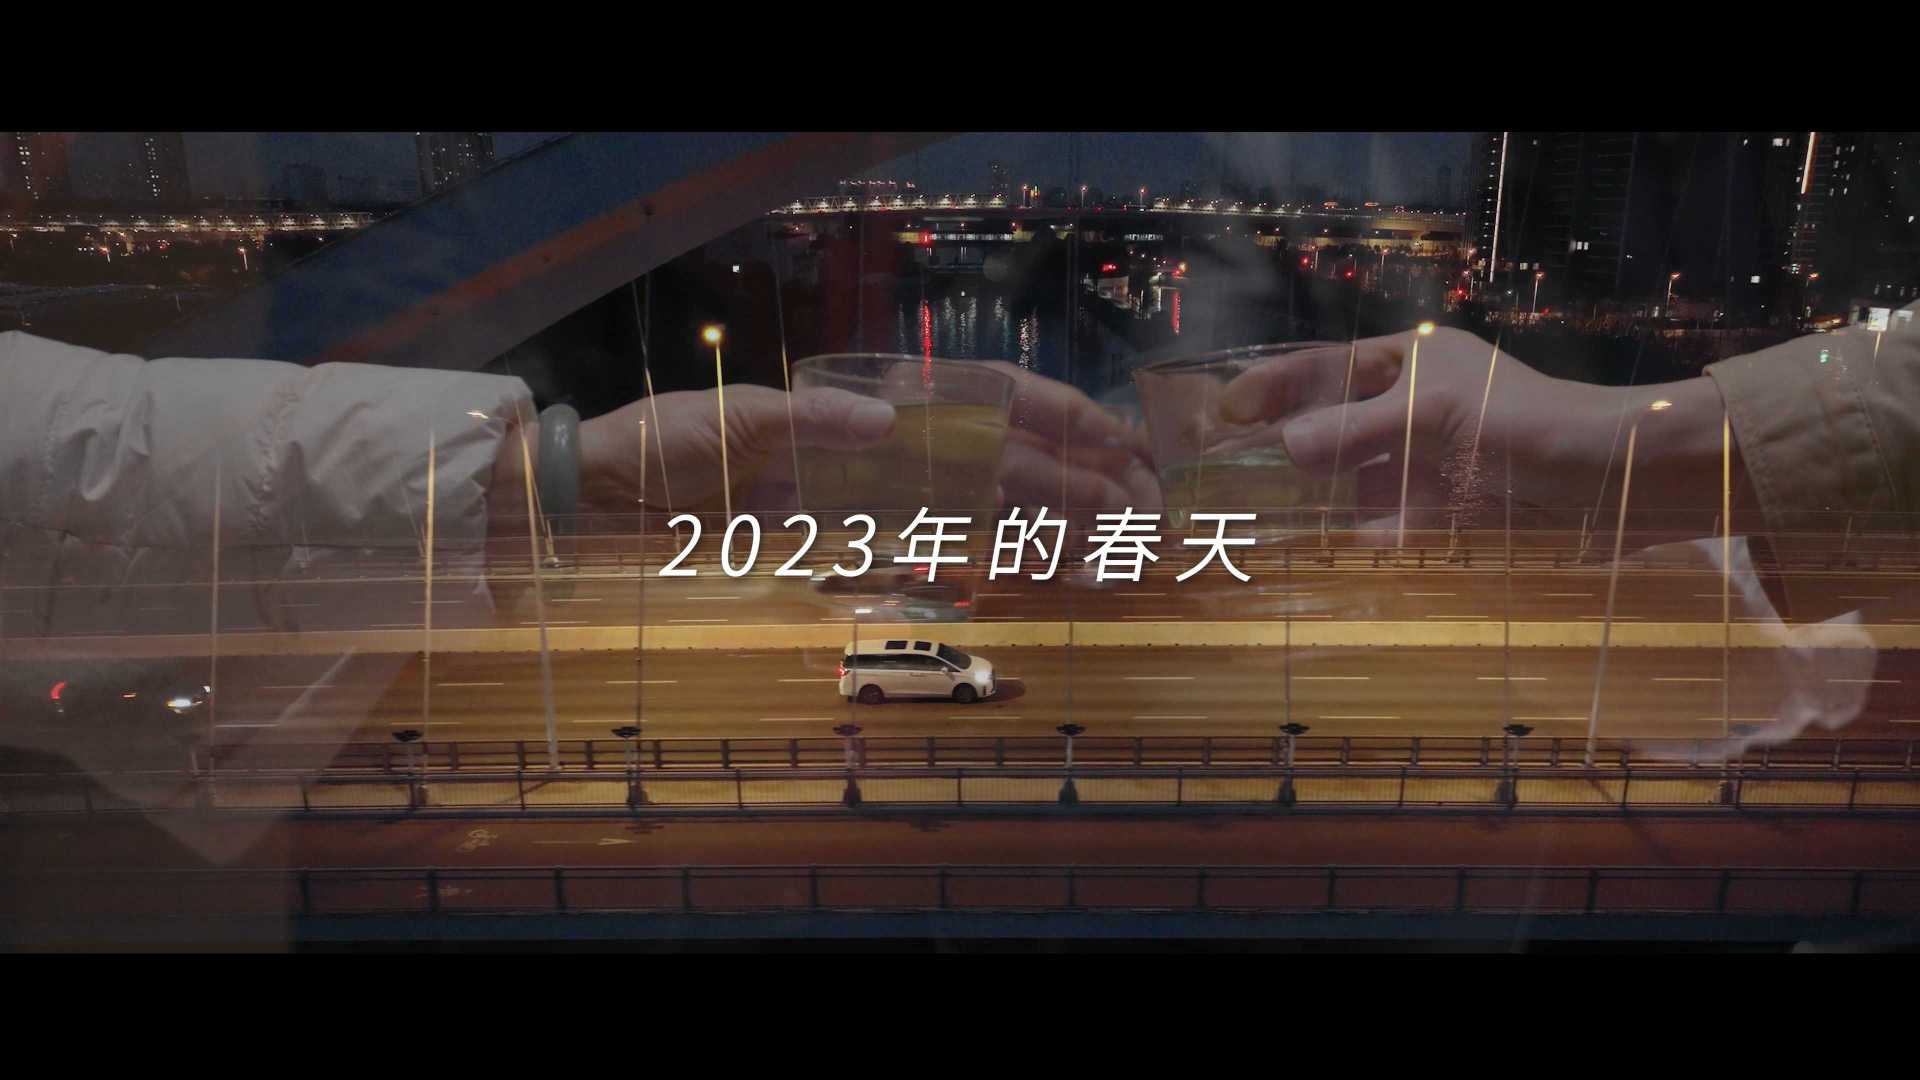 【纪录片】别克2023年春节品牌片《守一城 向归程》